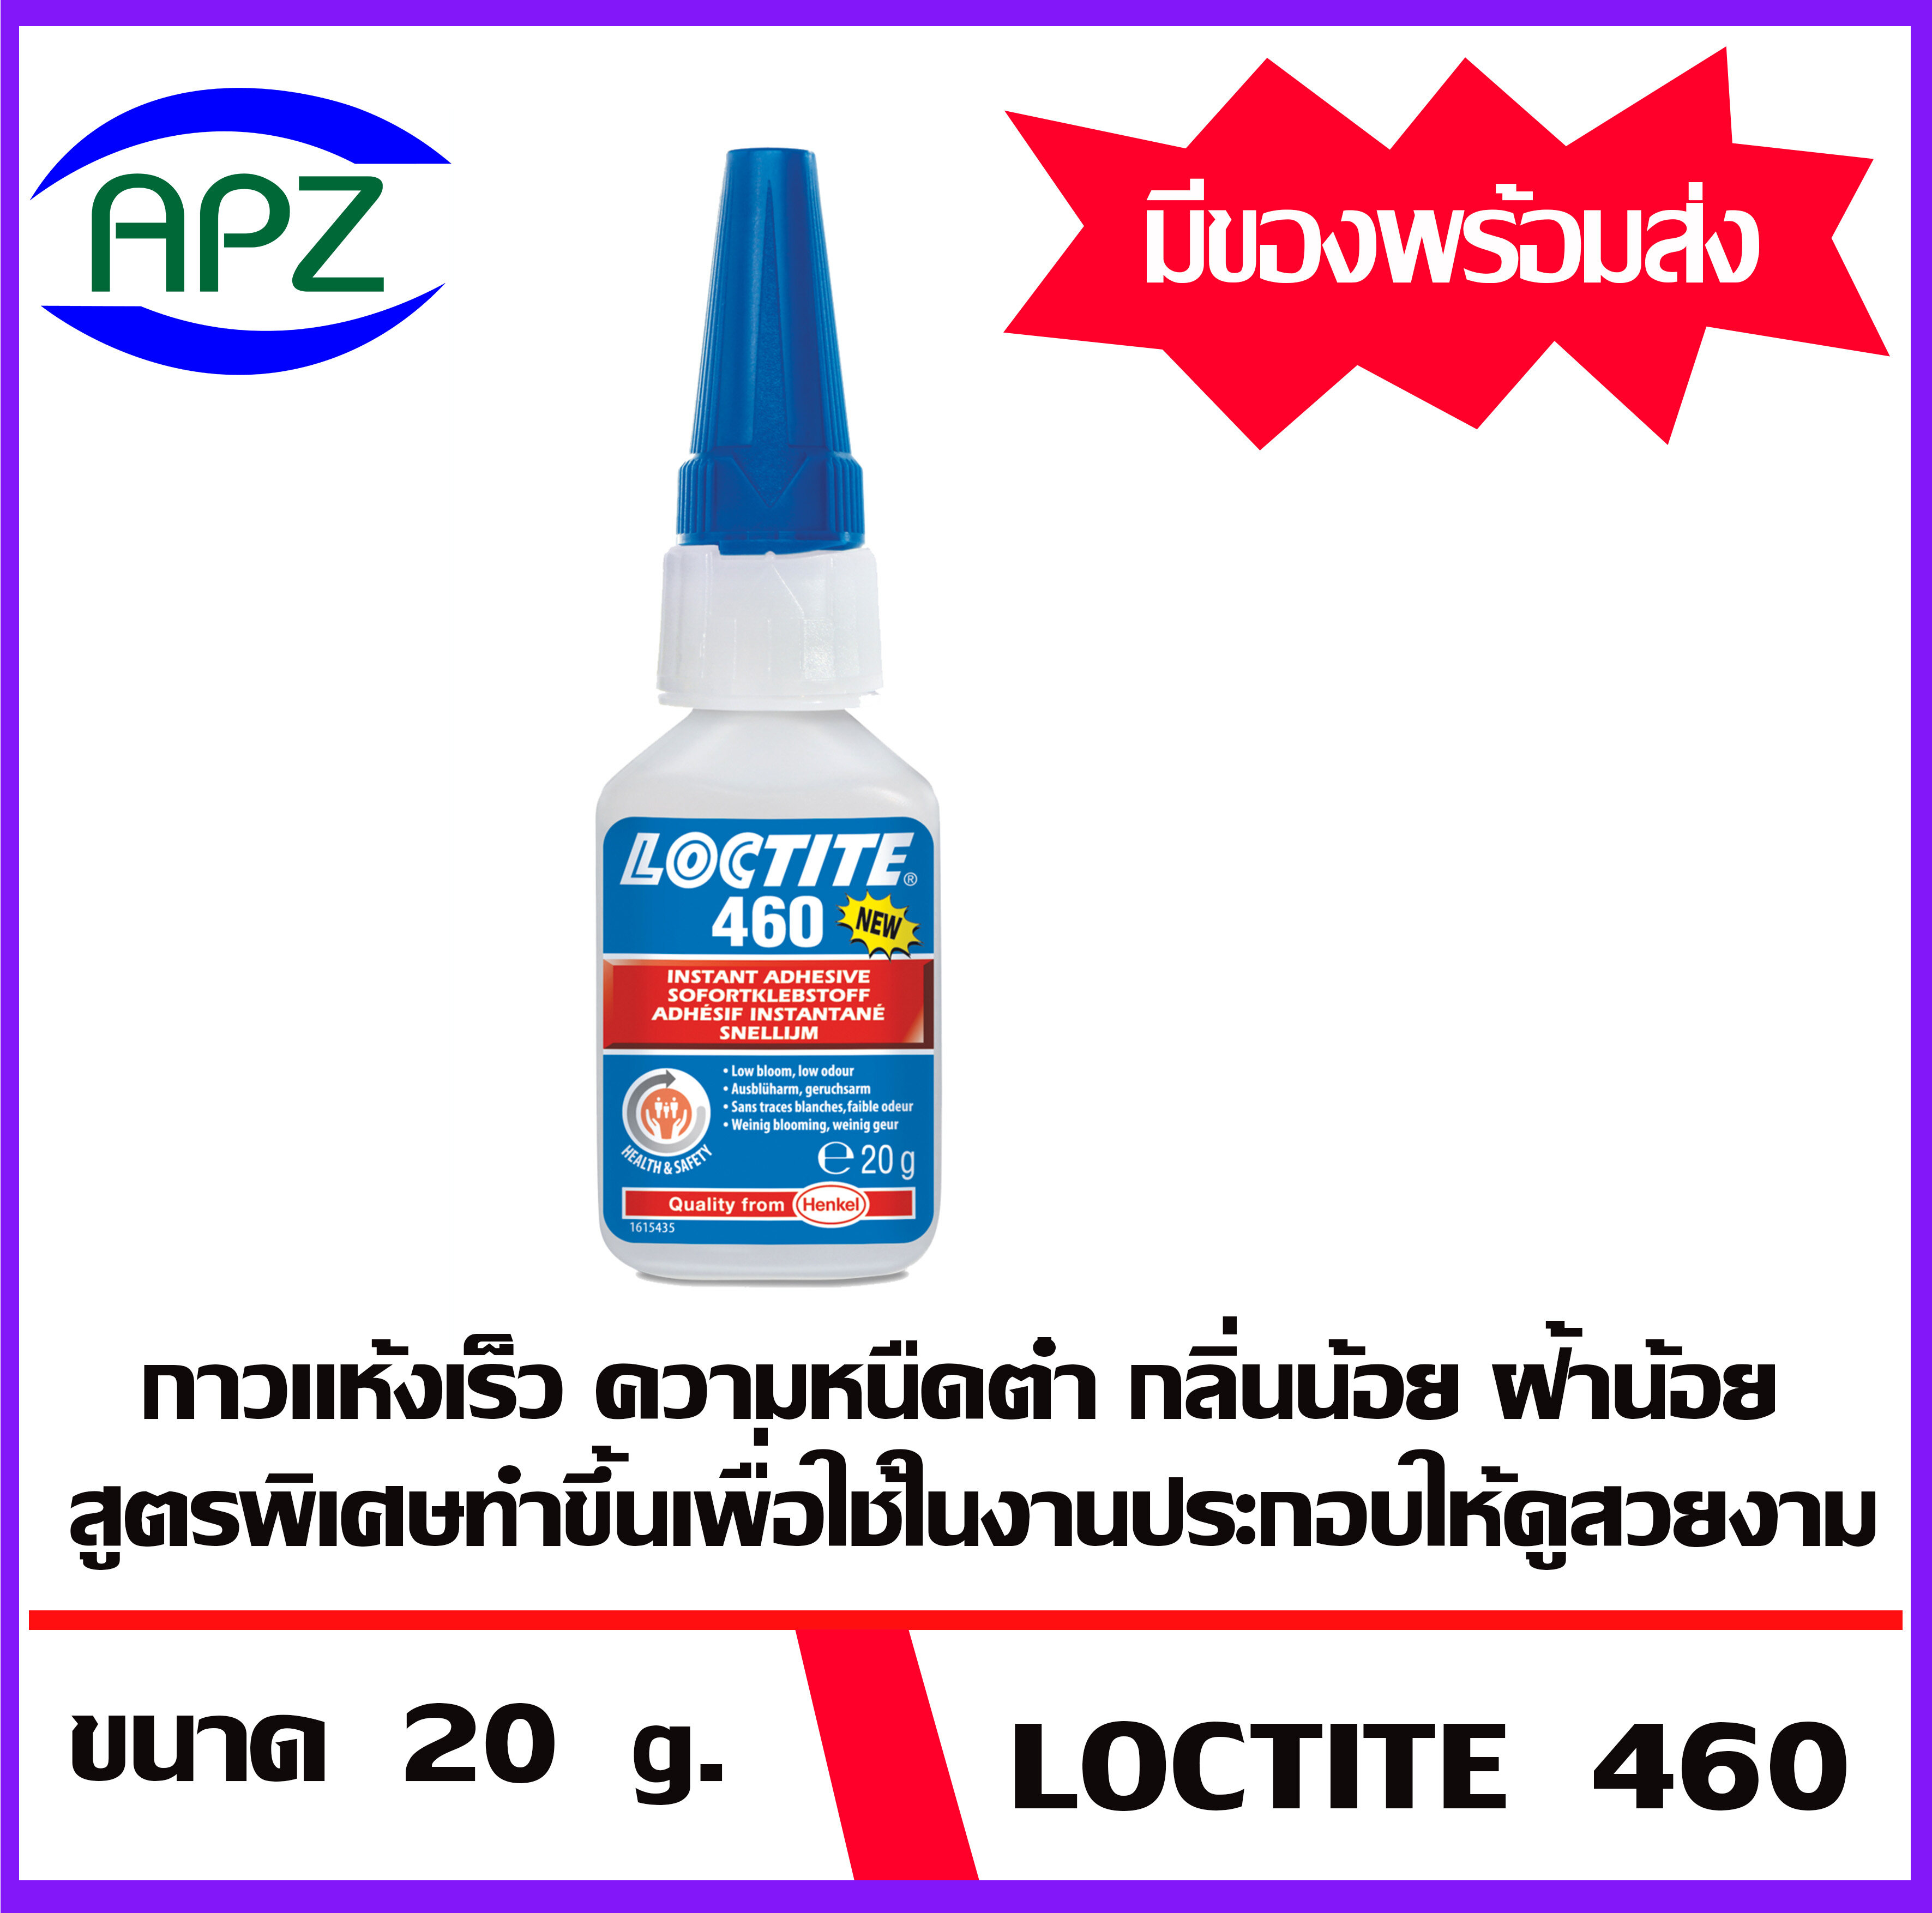 LOCTITE 460 กาวล็อคเกลียว 460 ขนาด  20  g.  ( Instant  Adhesives 460  ) กาวแห้งเร็ว ความหนืดต่ำ กลิ่นน้อย ฝ้าน้อย สูตรพิเศษทำขึ้นเพื่อใช้ในการประกอบให้ดูสวยงาม และให้ความแข็งแรงได้ตามต้องการ